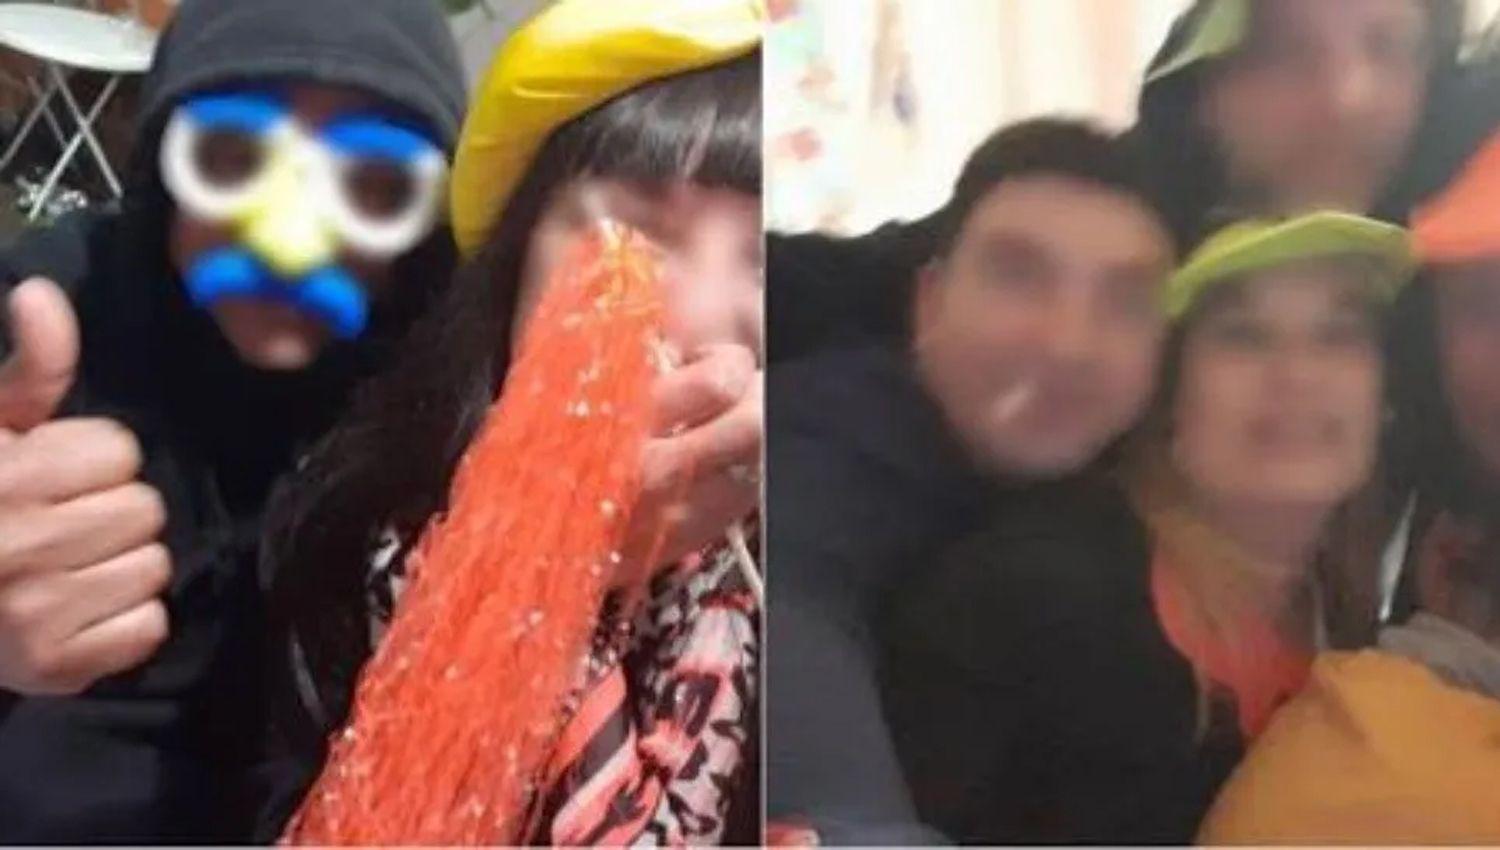 Treinta y tres personas estuvieron en una fiesta clandestina y subieron las fotos a Facebook